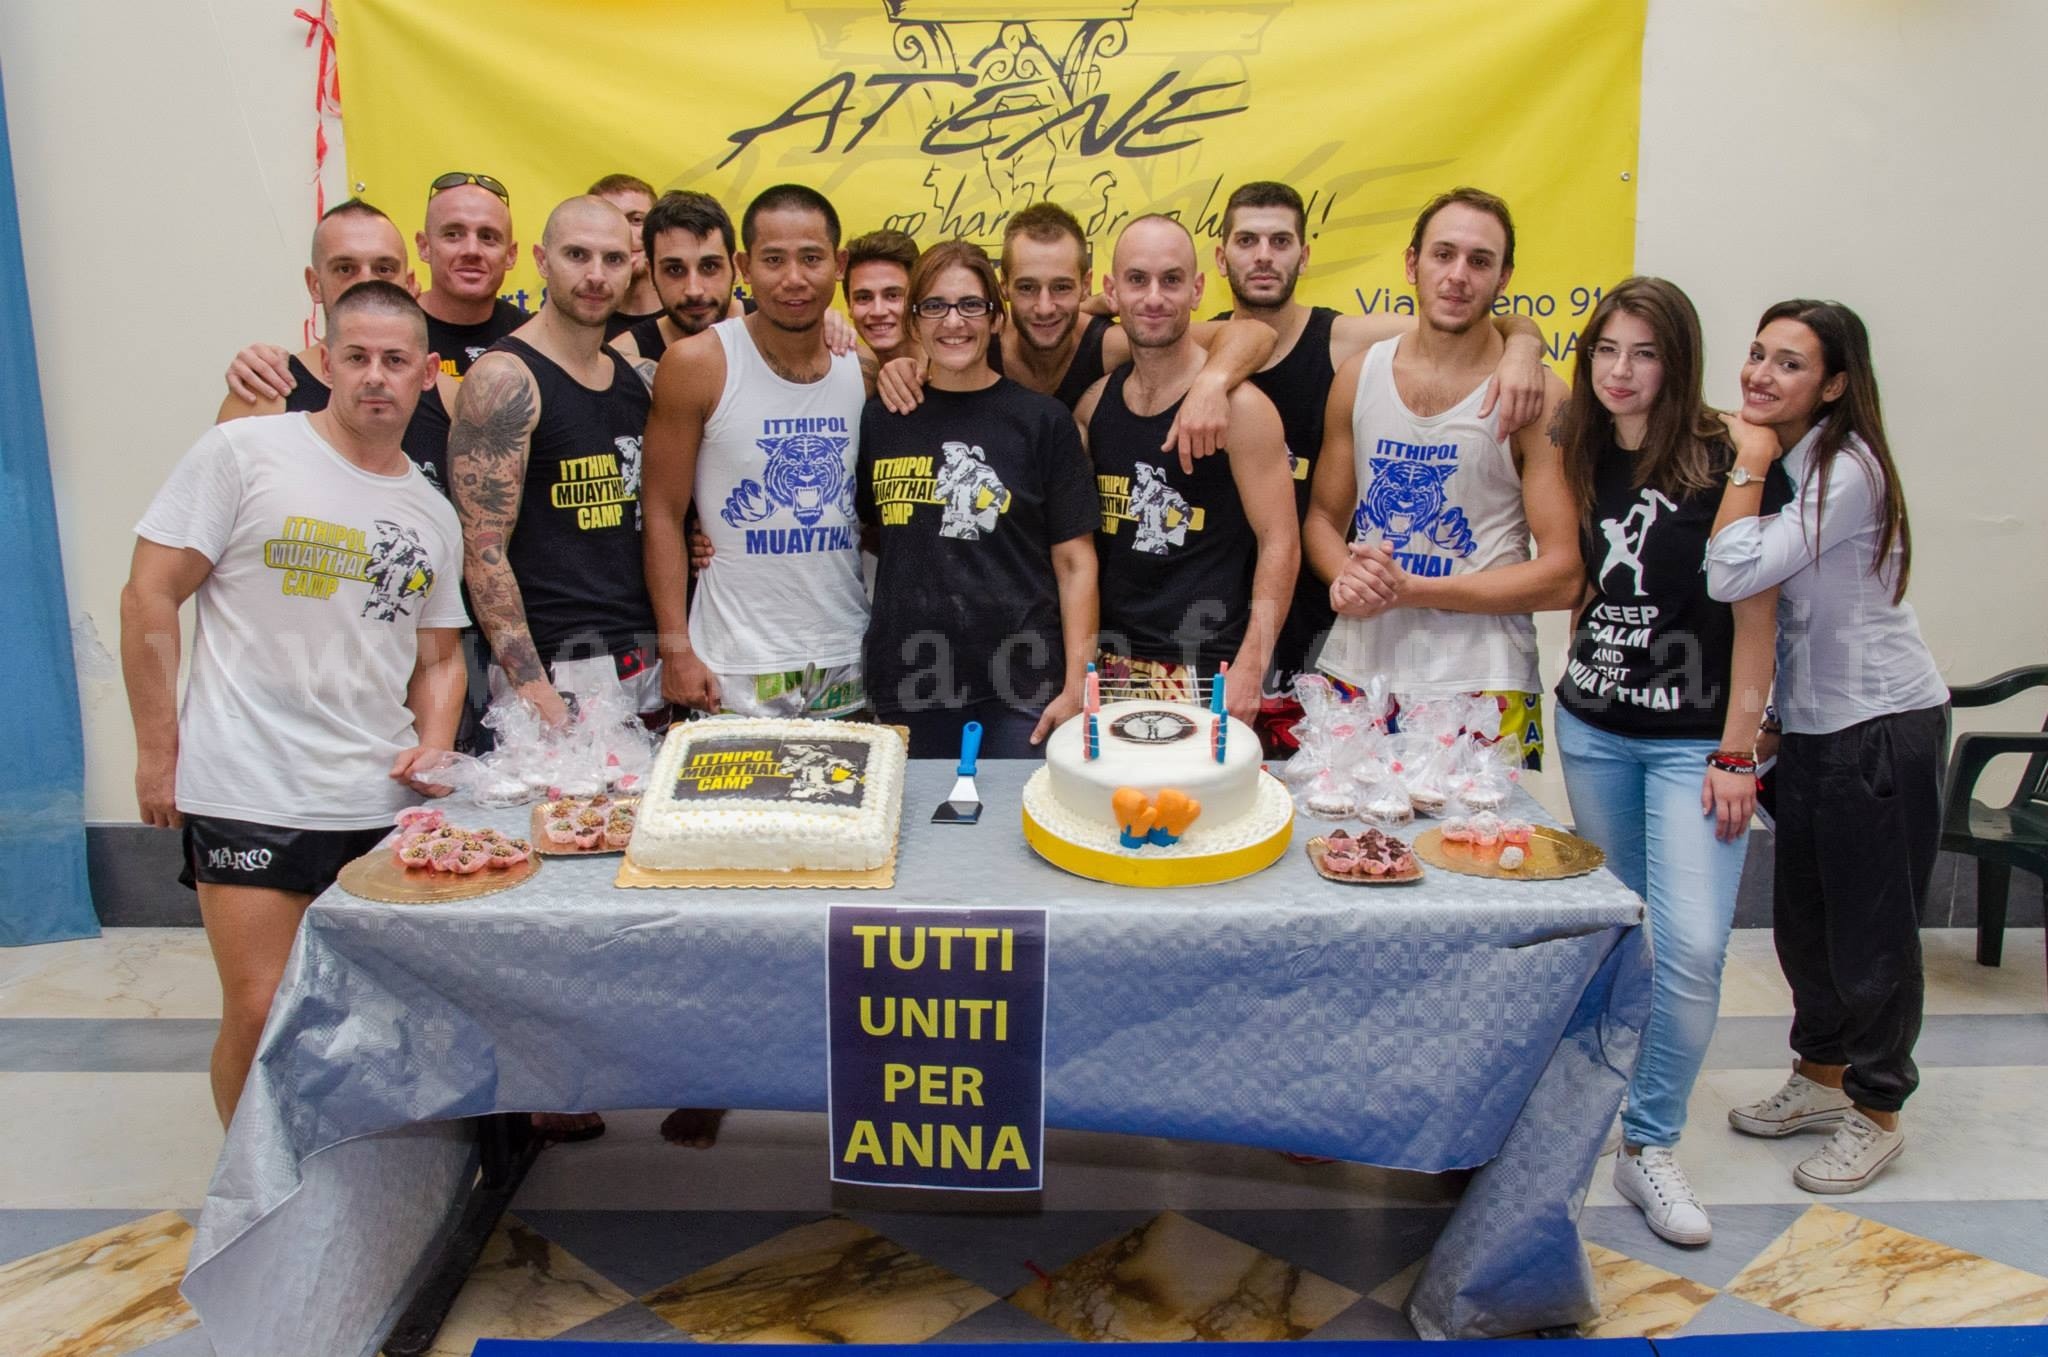 L’EVENTO/ “Tutti uniti per Anna”, a Bacoli vince la solidarietà – LE FOTO